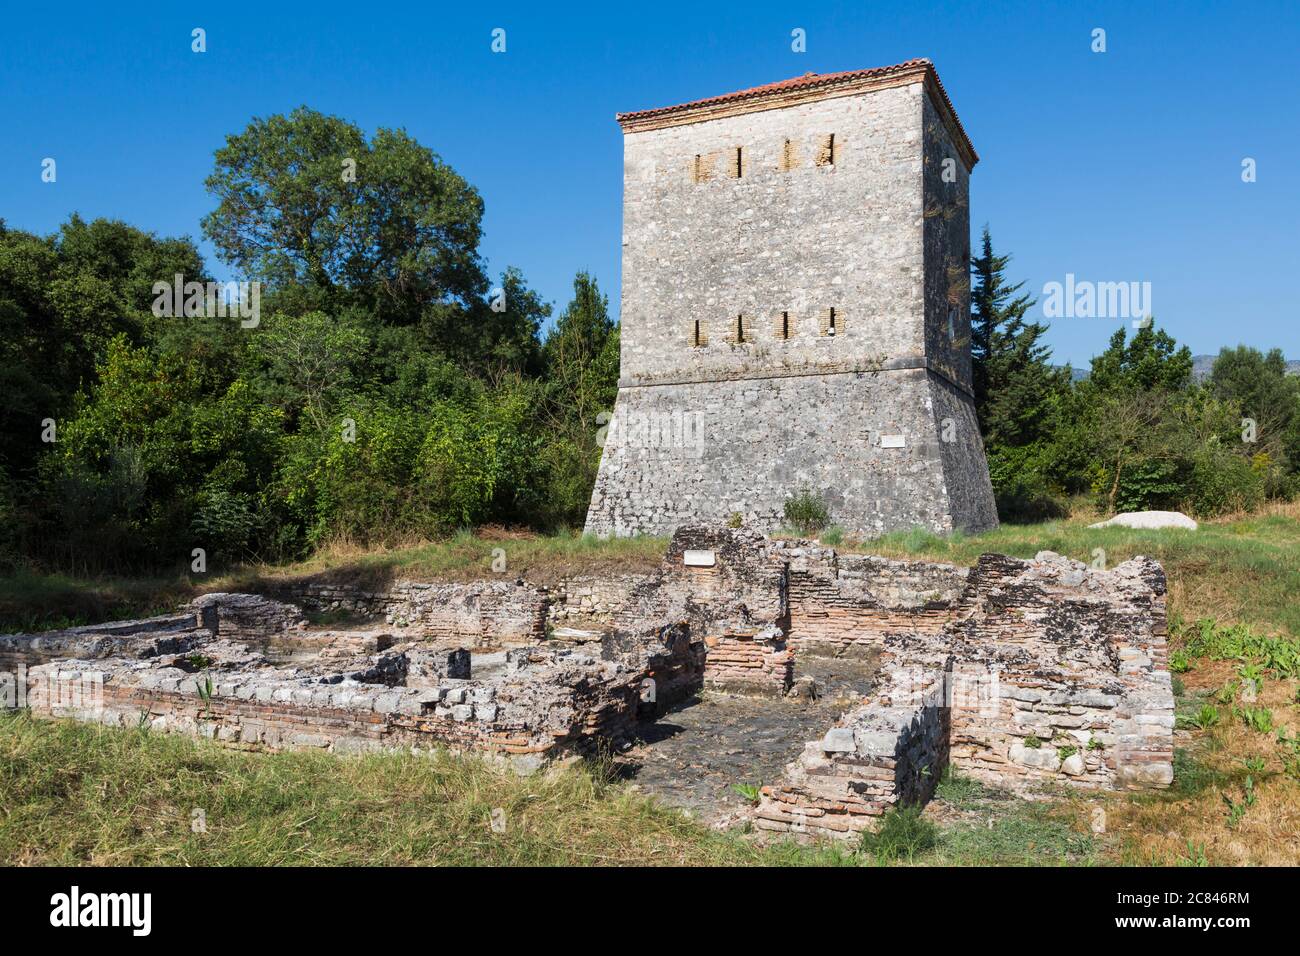 L'Albanie. Site archéologique de Butrint ou Buthrotum, Site du patrimoine mondial de l'UNESCO. La tour vénitienne. Banque D'Images